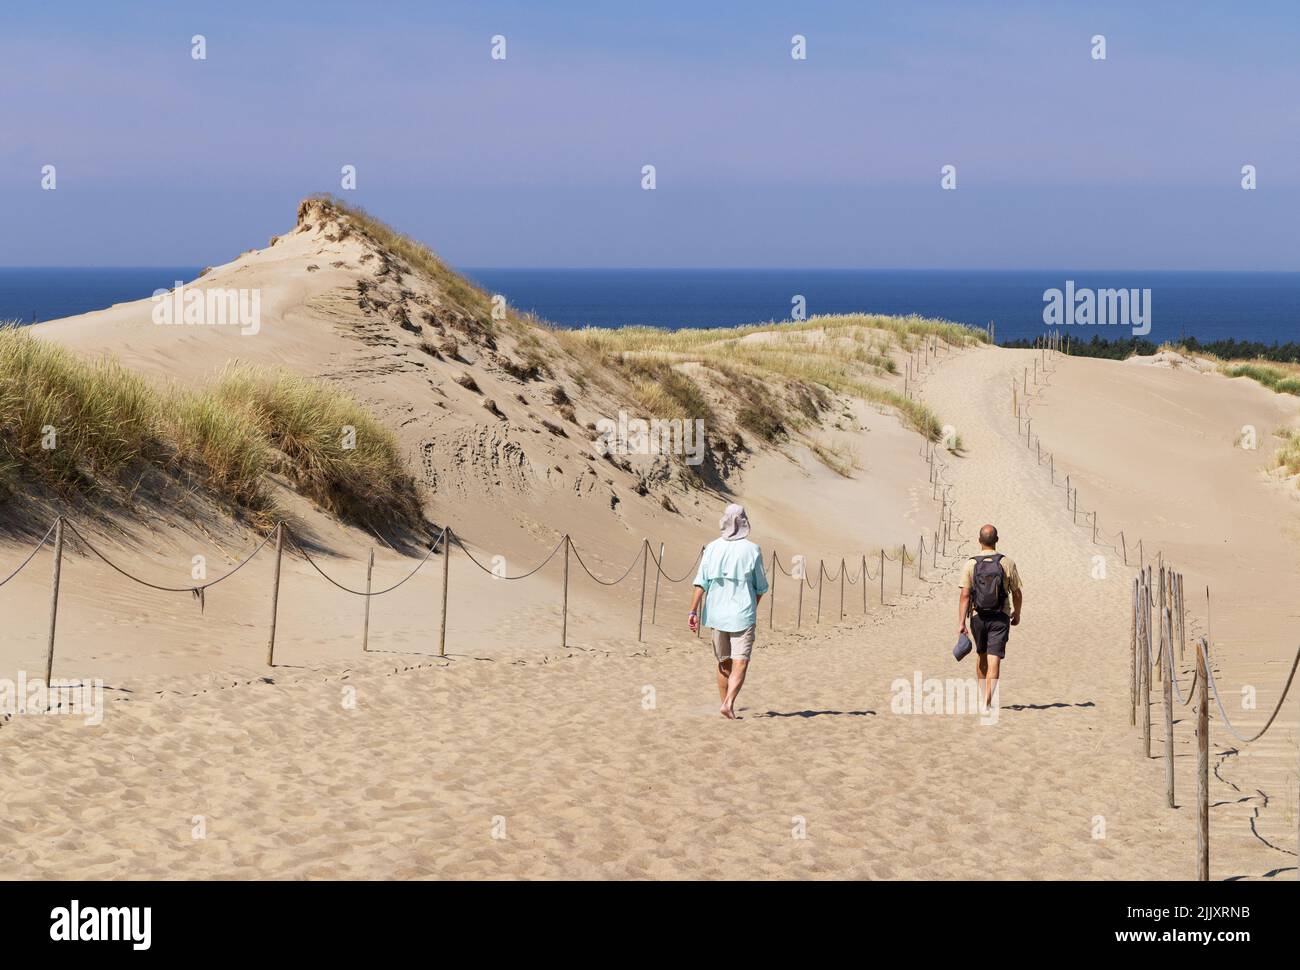 Lituania turisti - due uomini che camminano sulle dune di sabbia in estate, il Curonian Spit, costa della Lituania. Lituania Europa - esempio di viaggio in Lituania Foto Stock